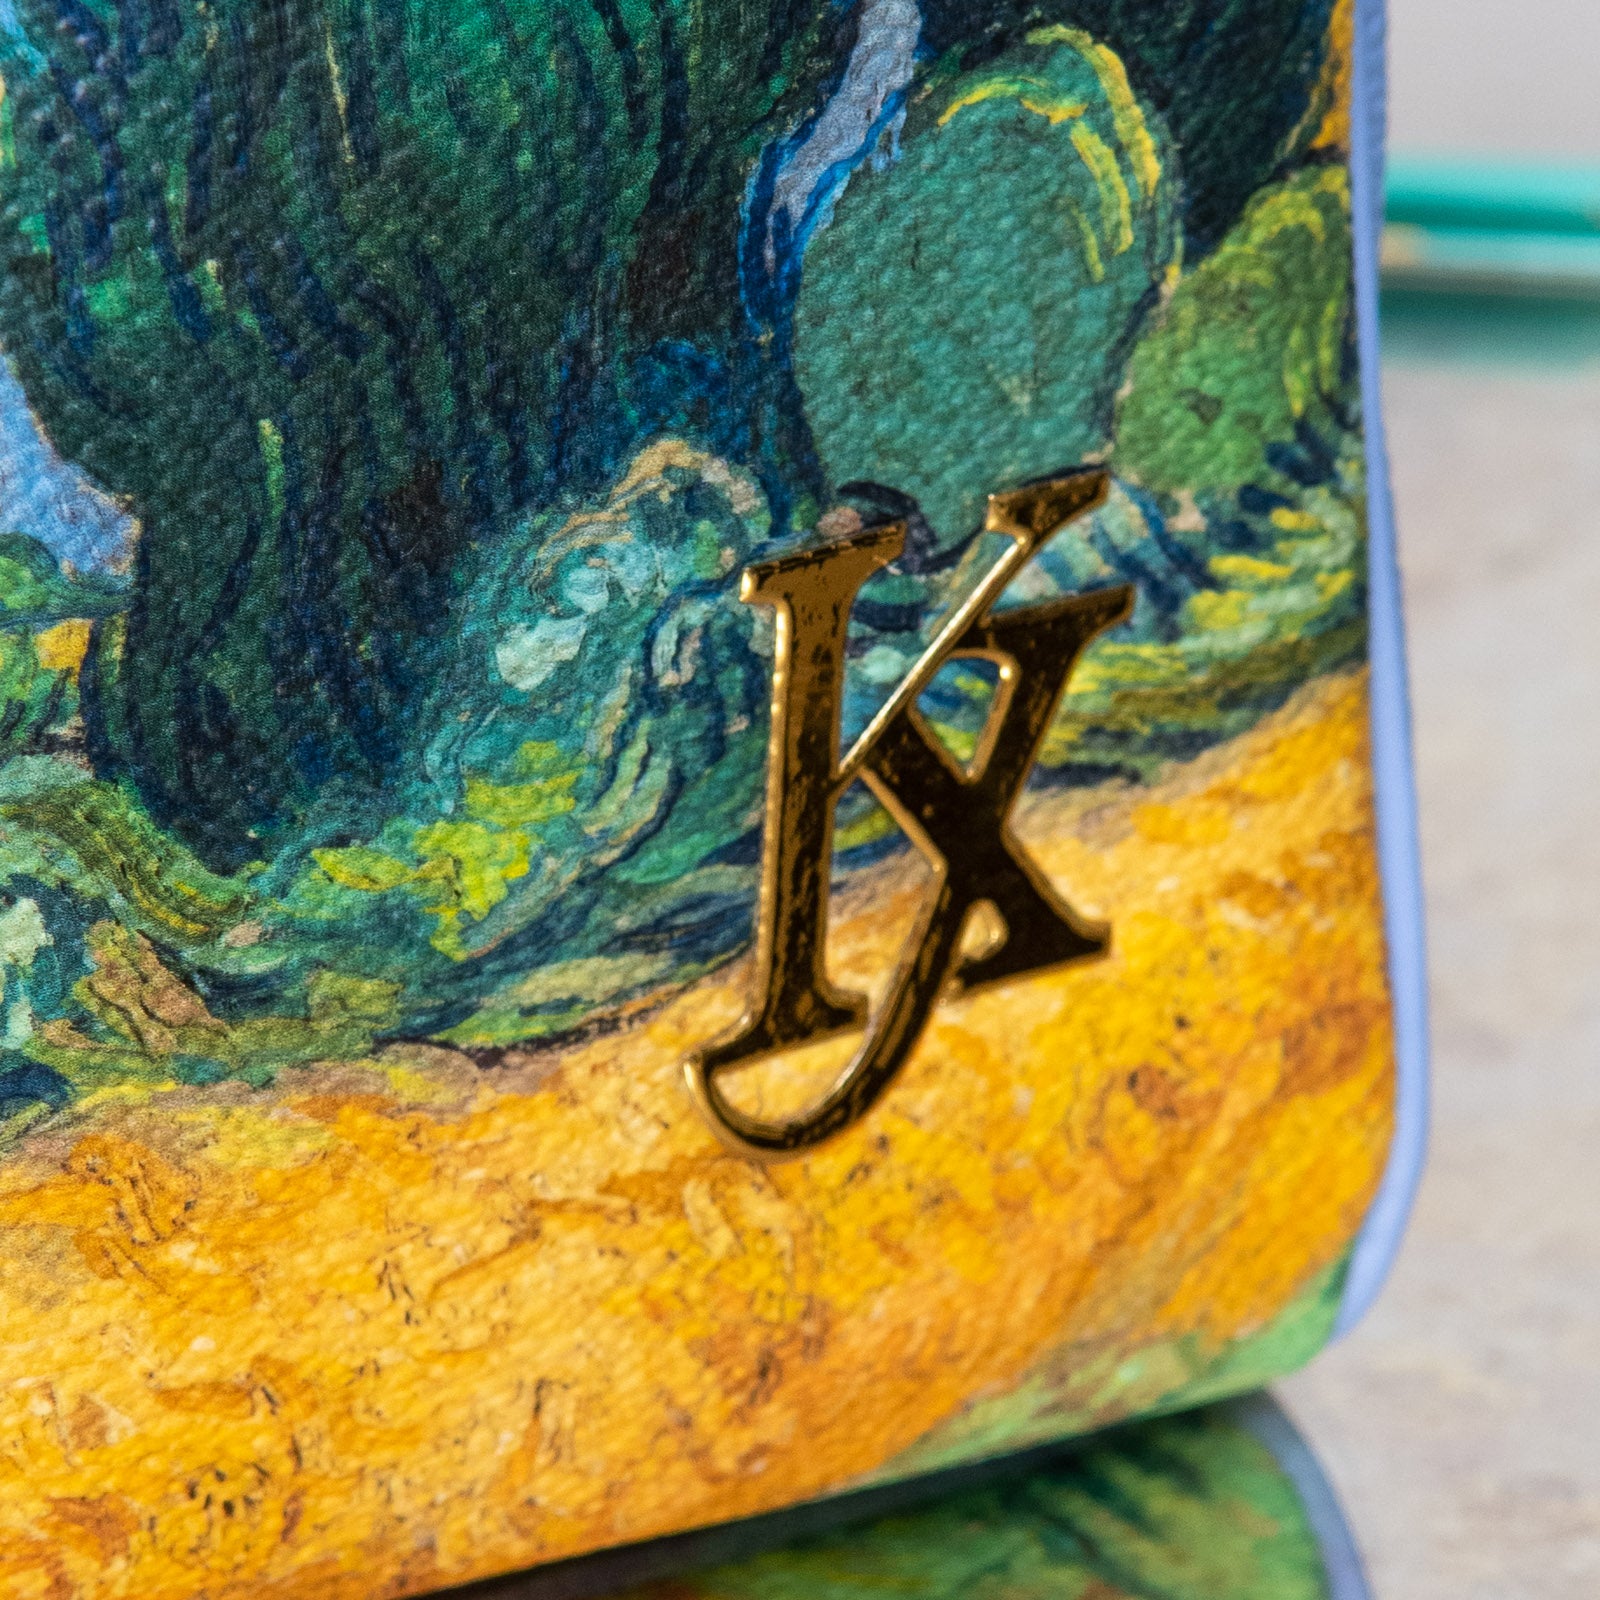 Louis Vuitton Van Gogh Jeff Koons Zippy Wallet